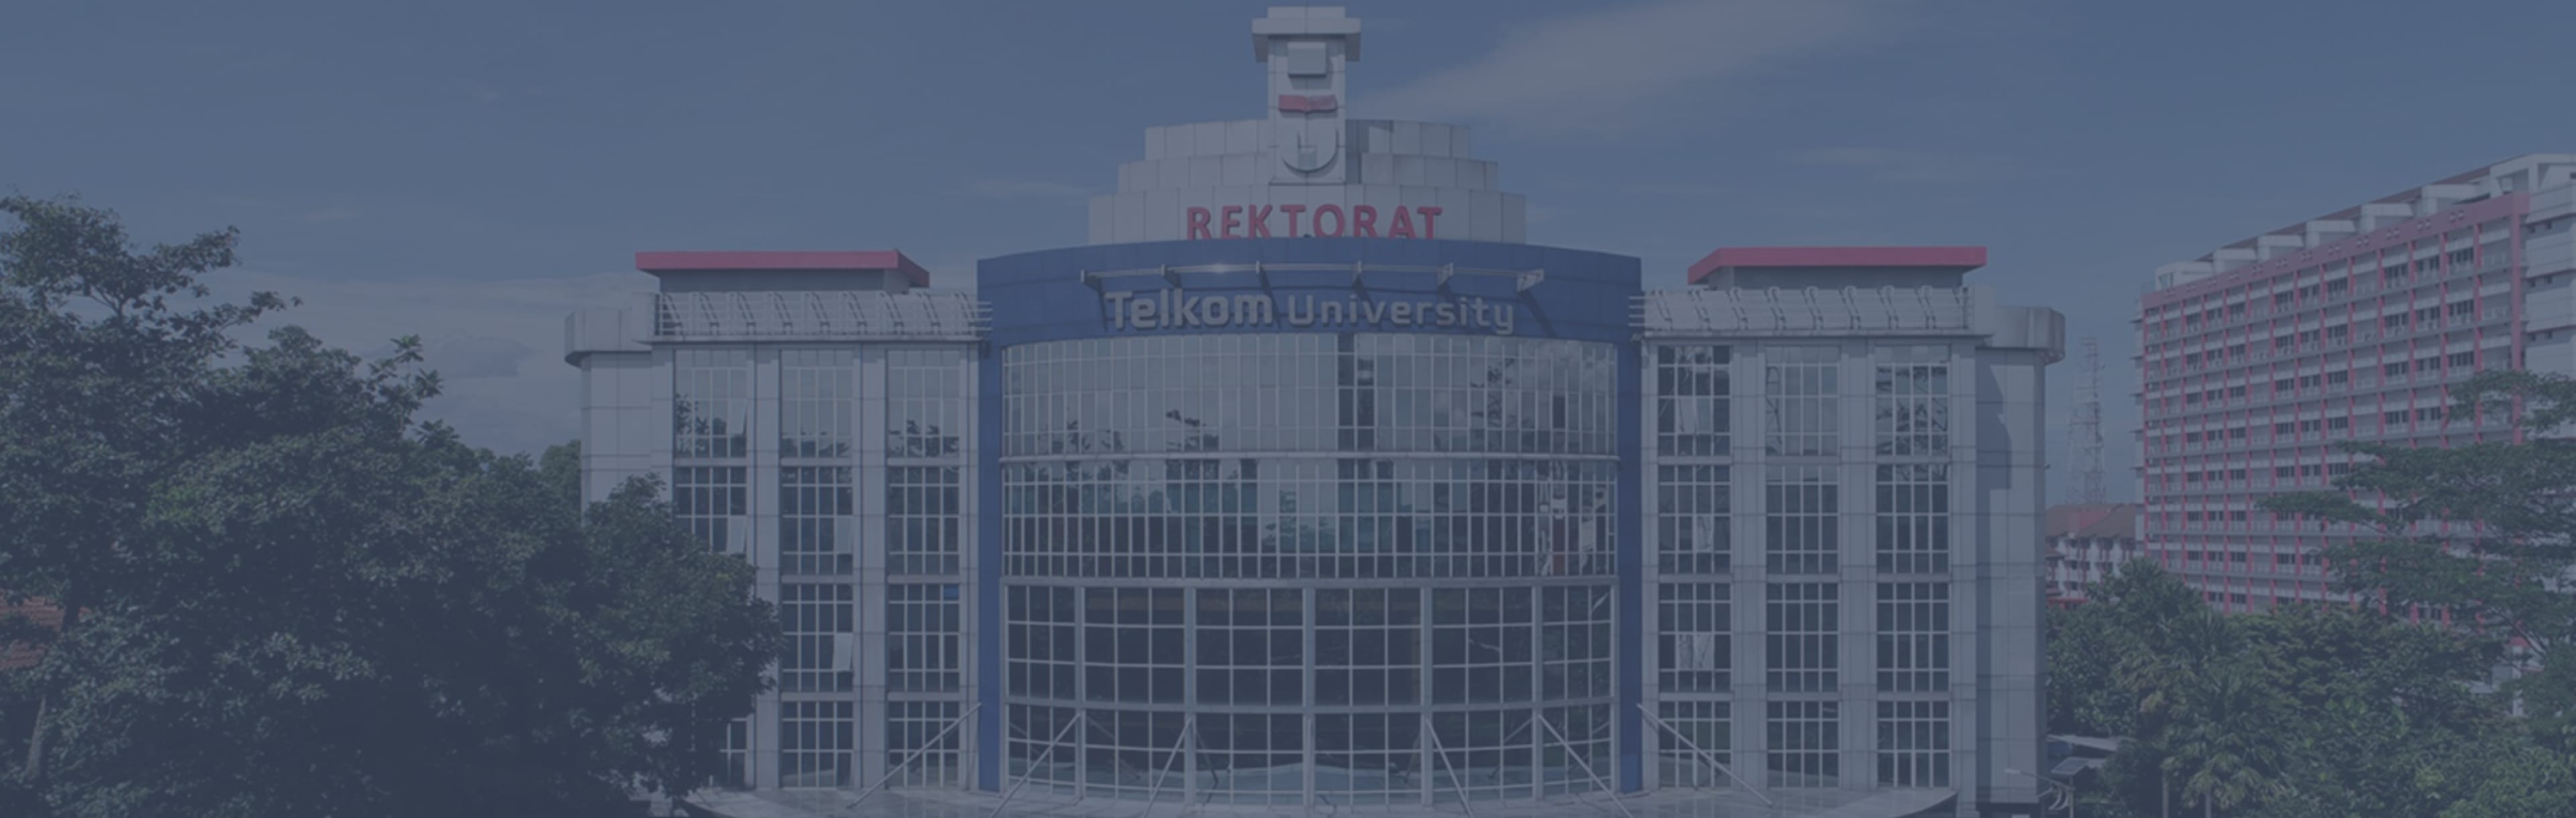 Telkom University